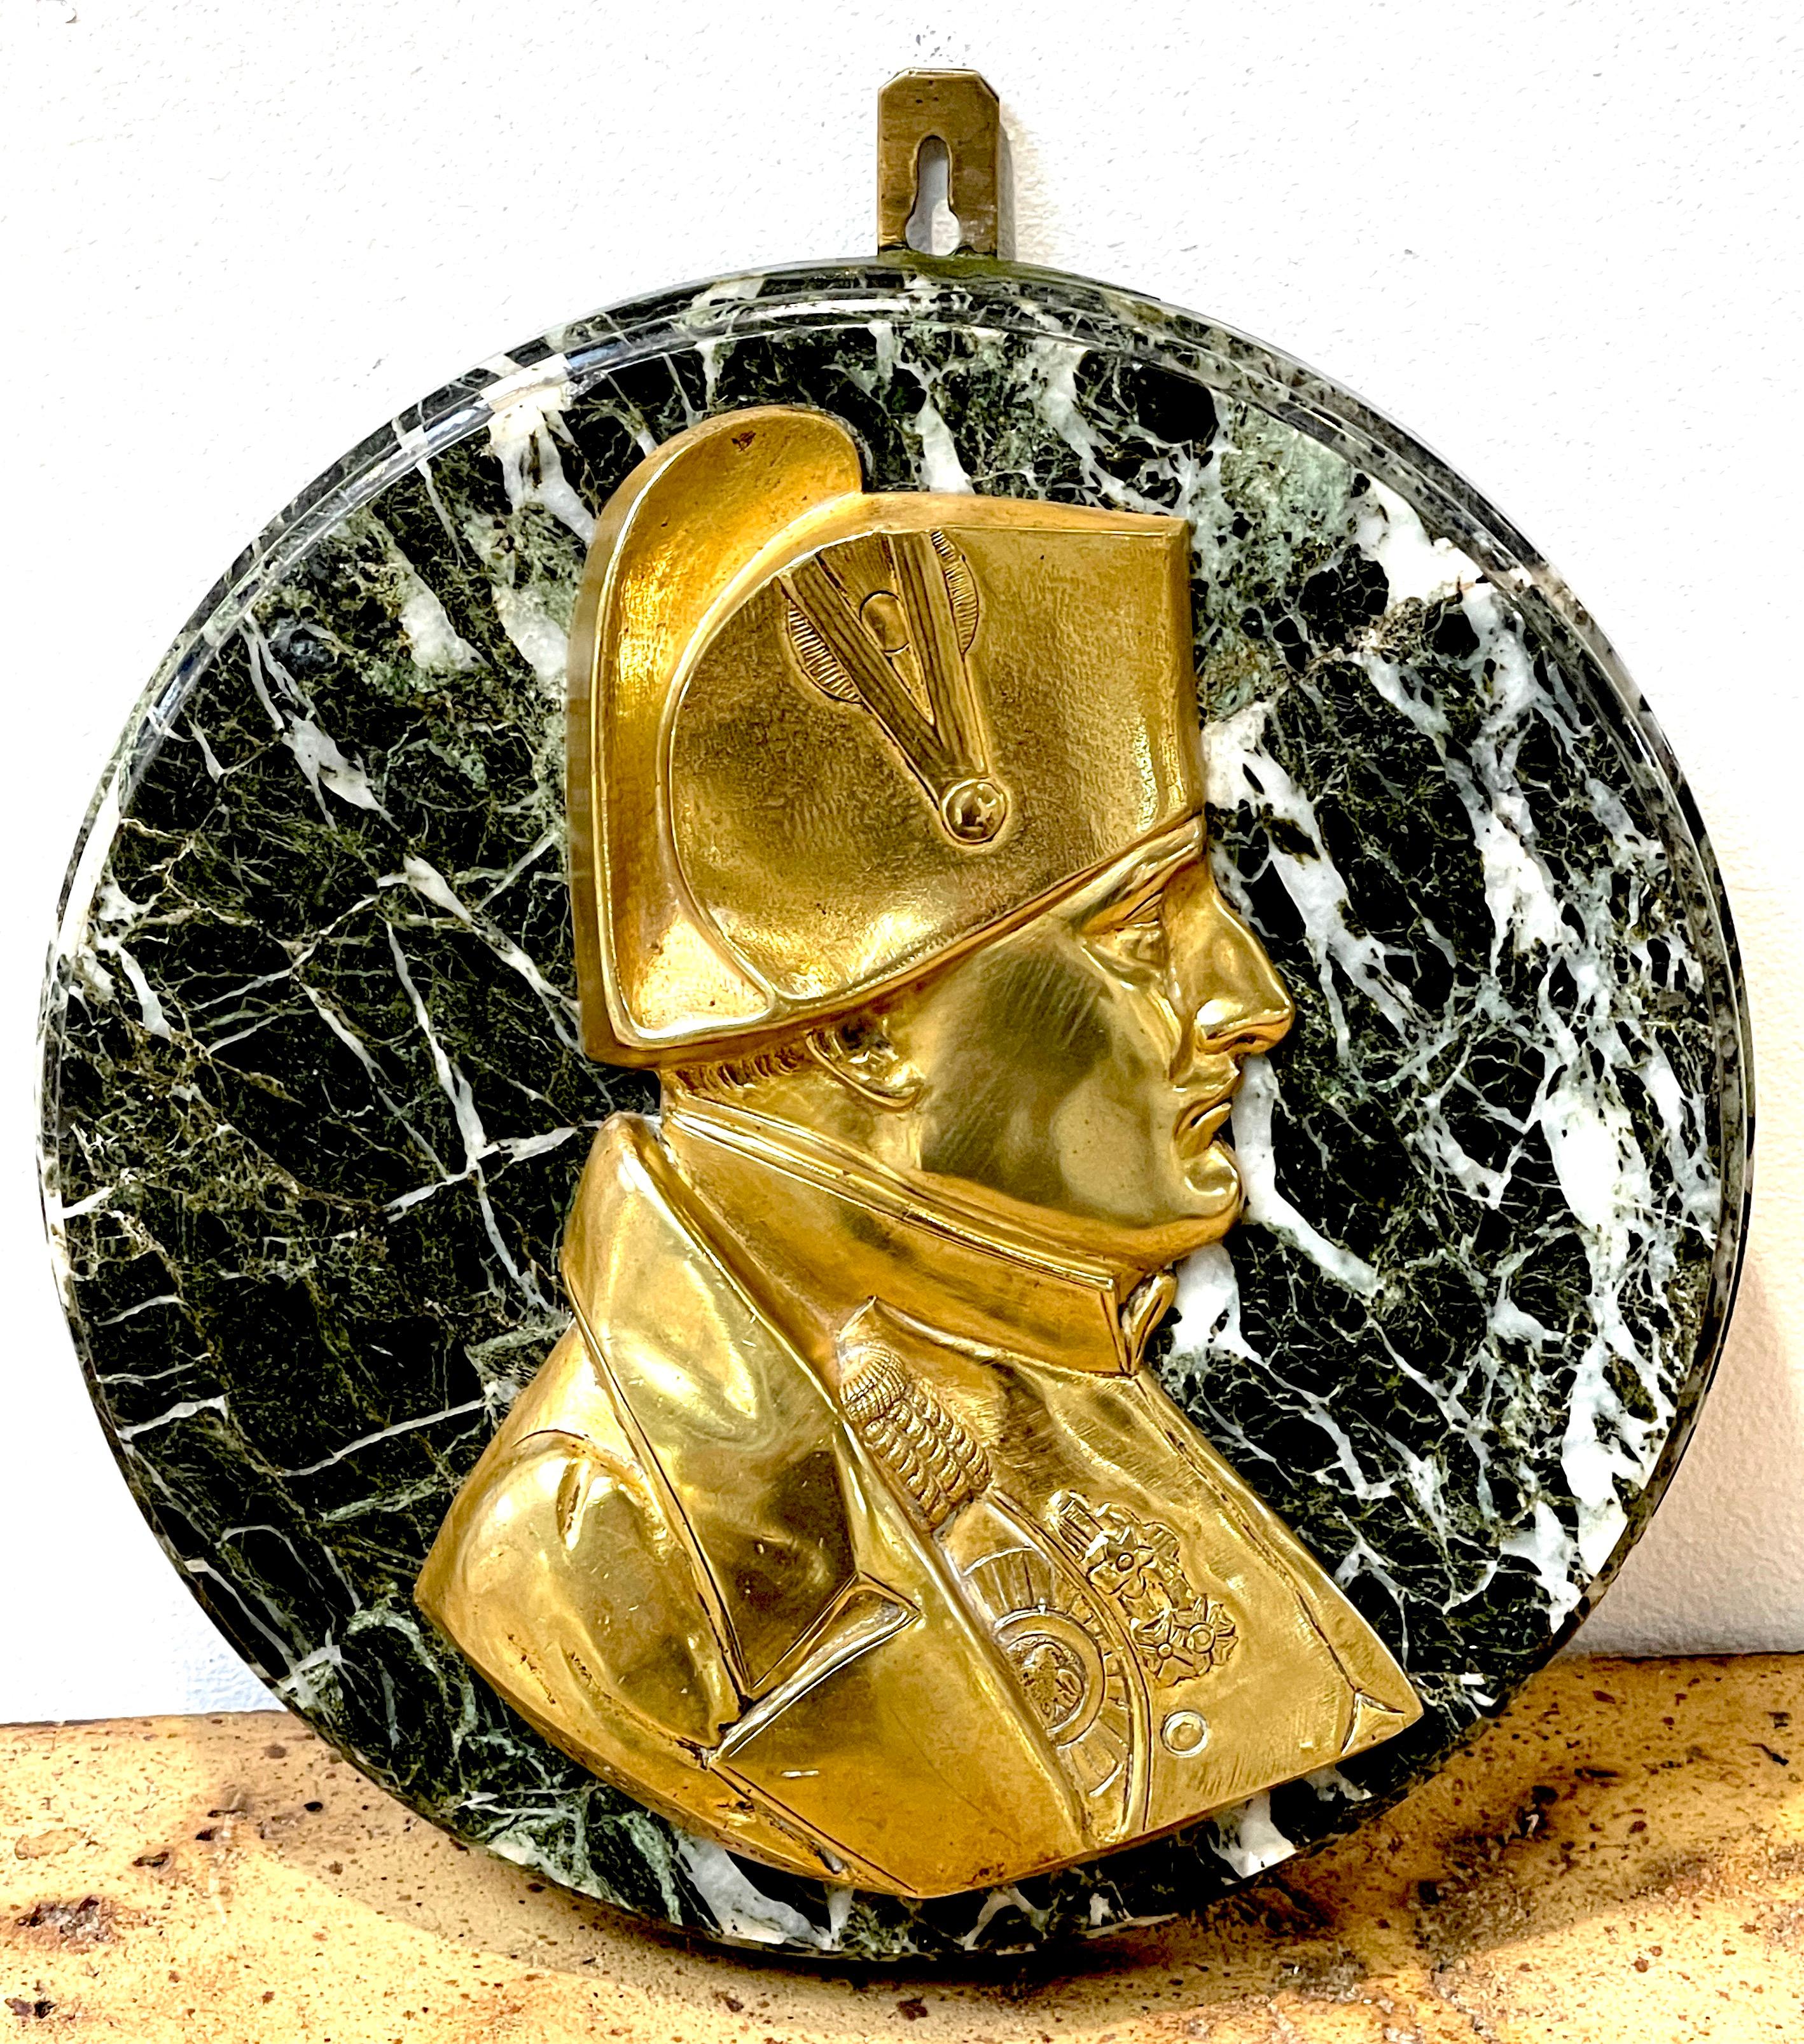 Plaque de portrait de Napoléon en bronze doré et marbre, par Pierre Jean David D'Anger
Pierre Jean David D'Anger (1788 - 1856), Sculpteur français
L'essence sculptée de l'histoire et de l'art français avec cette exquise plaque portrait de Napoléon